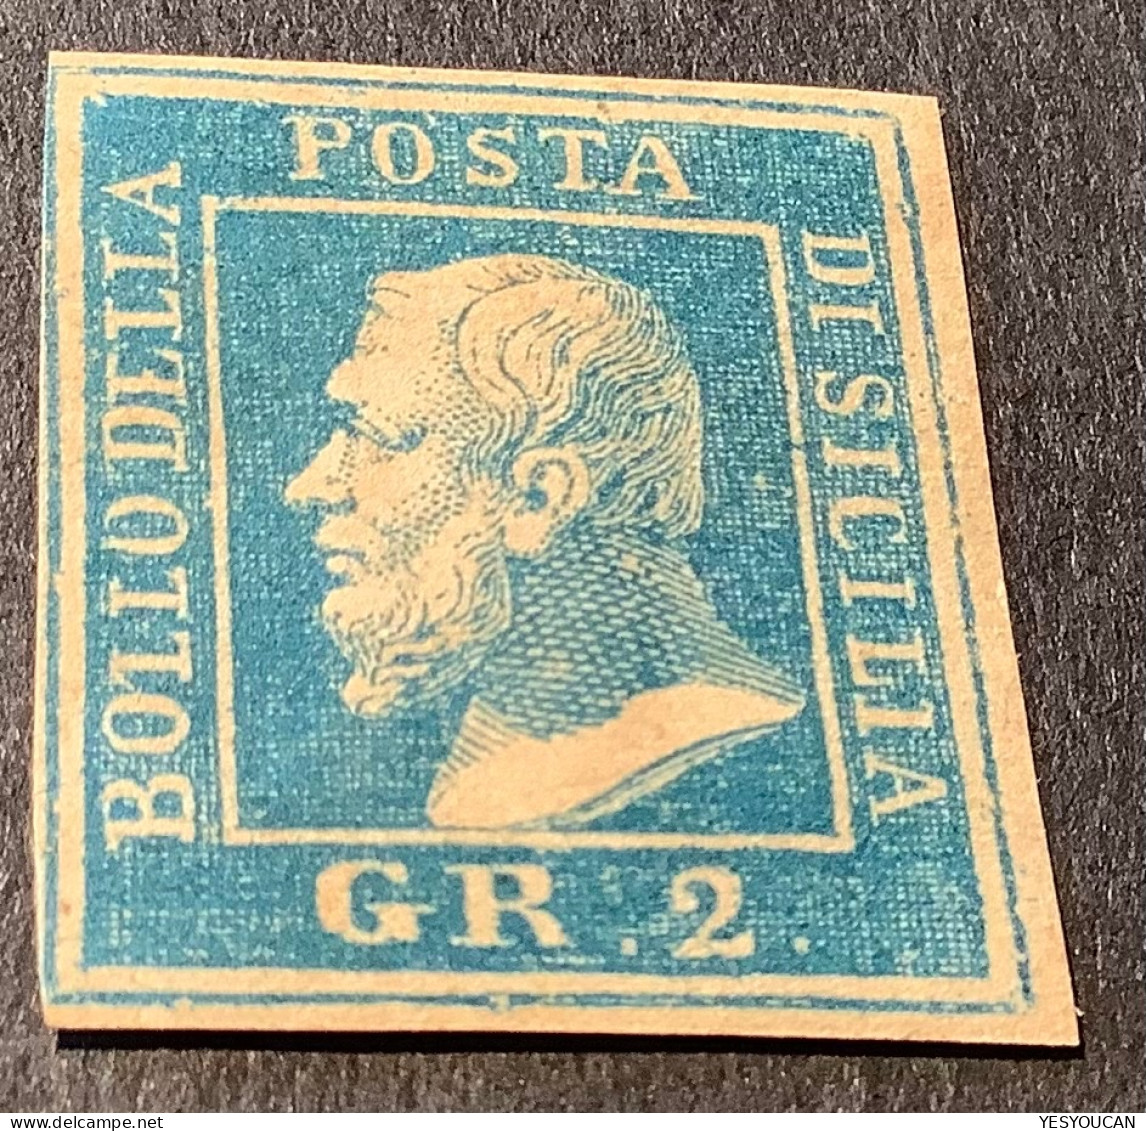 Sicilia 1859 Rare Lithographic Forgery (falso) Or Essay (saggi)? (Sicily Sicile Italy Italia Italie Essai/faux ? - Sizilien